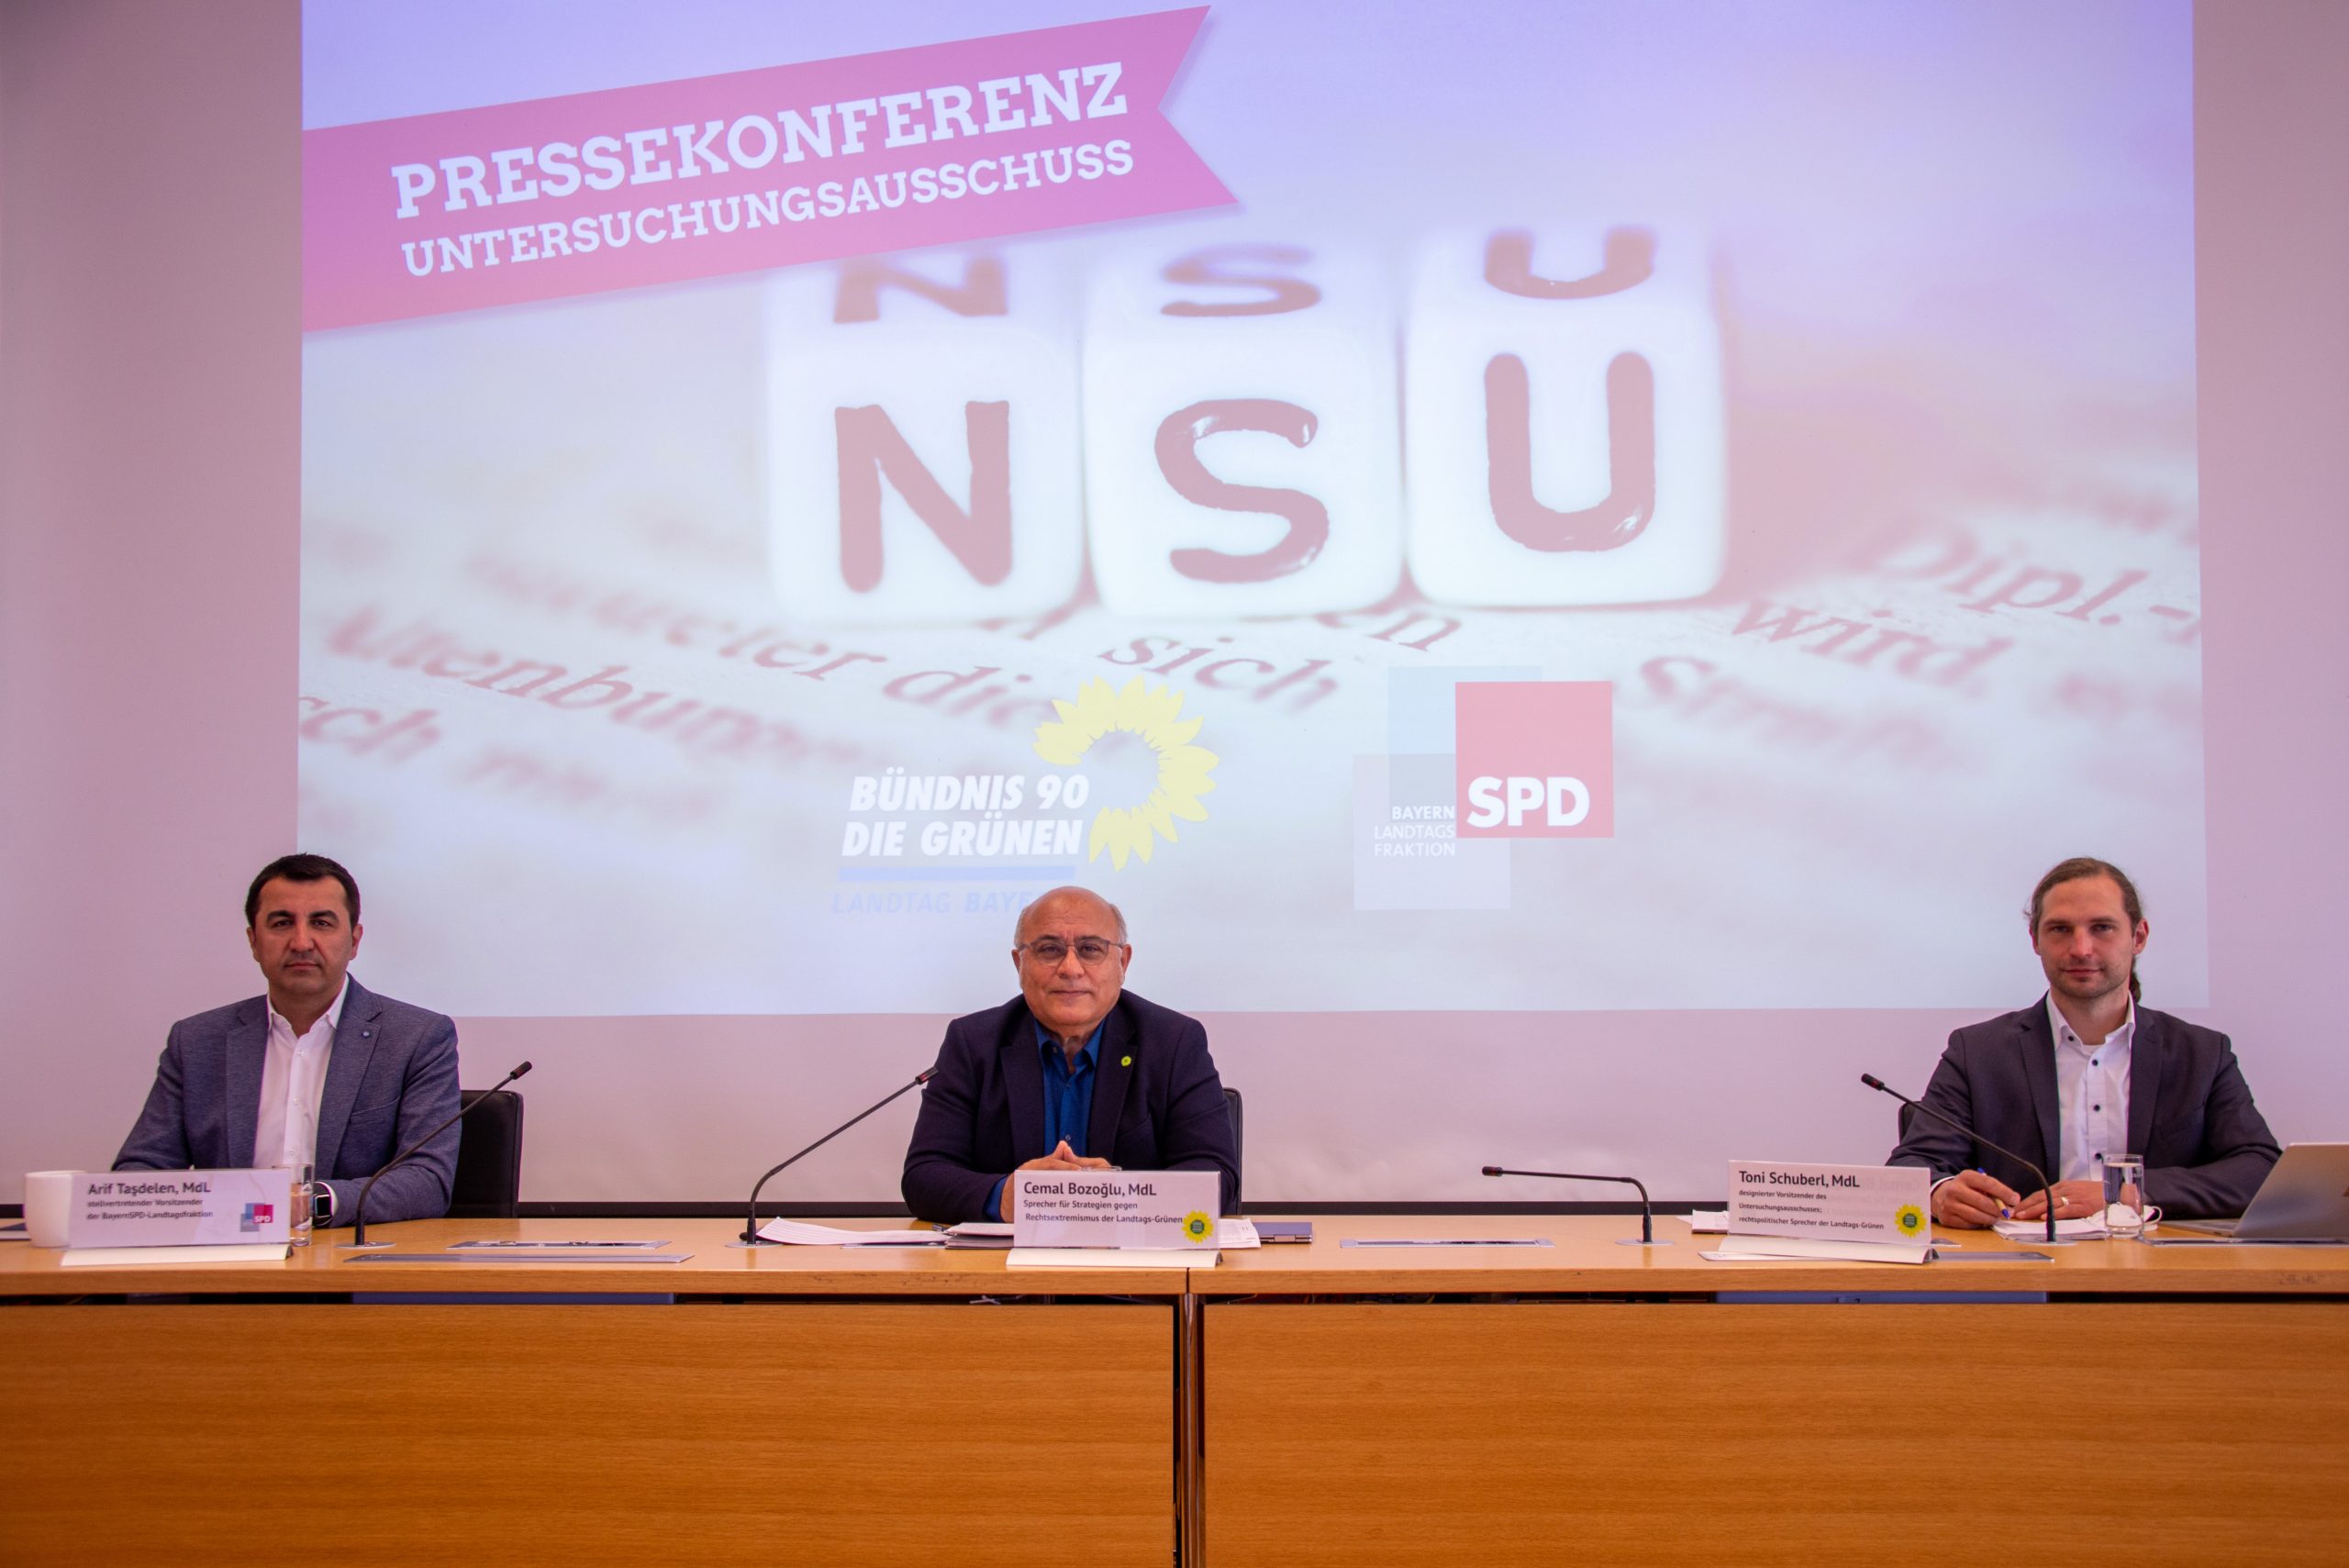 Im Bild zu sehen von links: MdL Arif Tasdelen (SPD), Cemal Bozoglu (Bündnis 90 / Die Grünen) und Toni Schuberl (Bündnis 90 / Die Grünen)